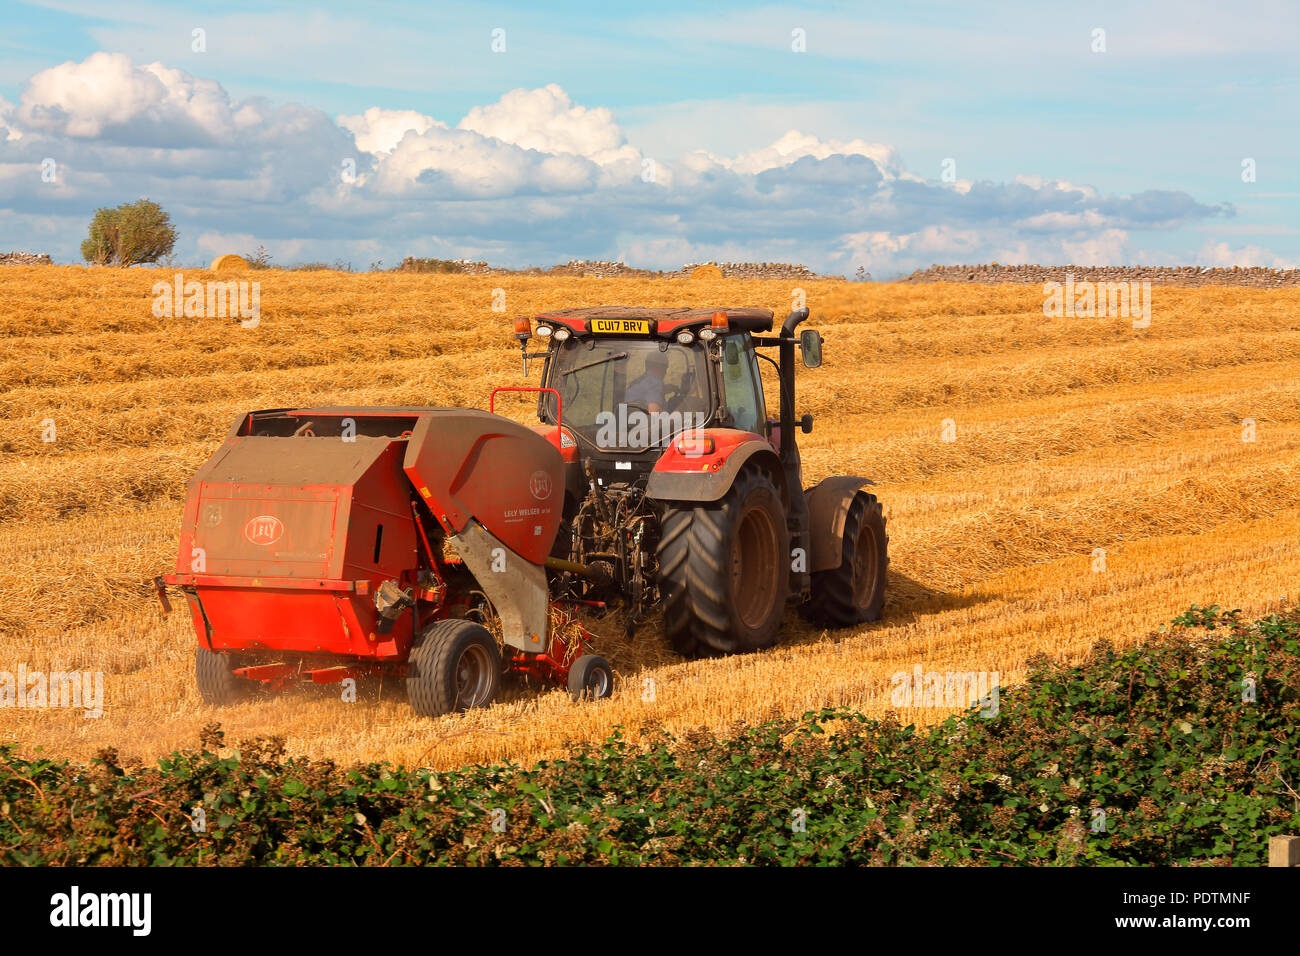 Die lokalen Bauern in seinem Traktor Ziehen entlang einer Pressen Maschine alle Stroh Stengel aus dem Weizen in riesigen Rundballen zu sammeln. Stockfoto